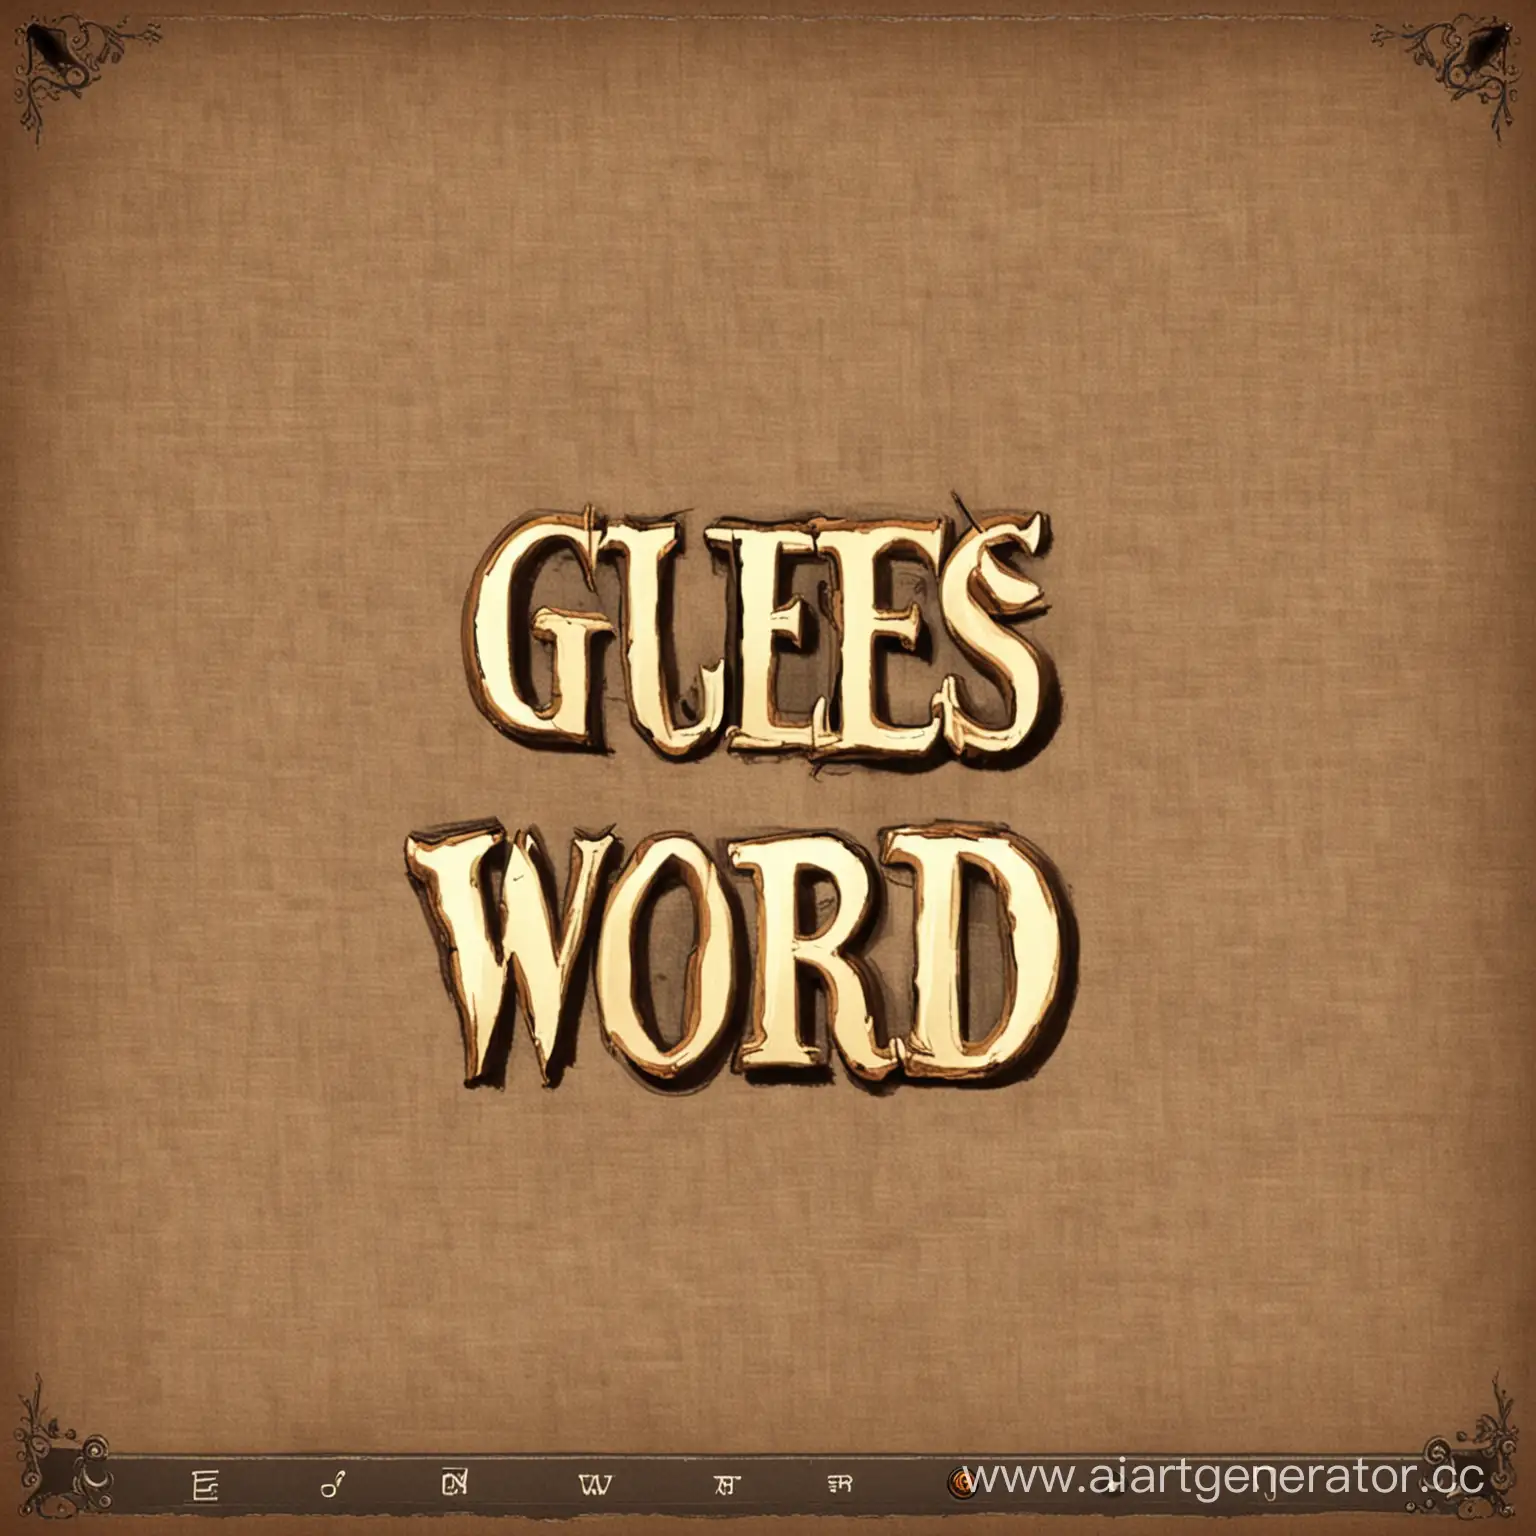 Заставка для игры угадай слово, на ней должен быть текст - "угадай слово".